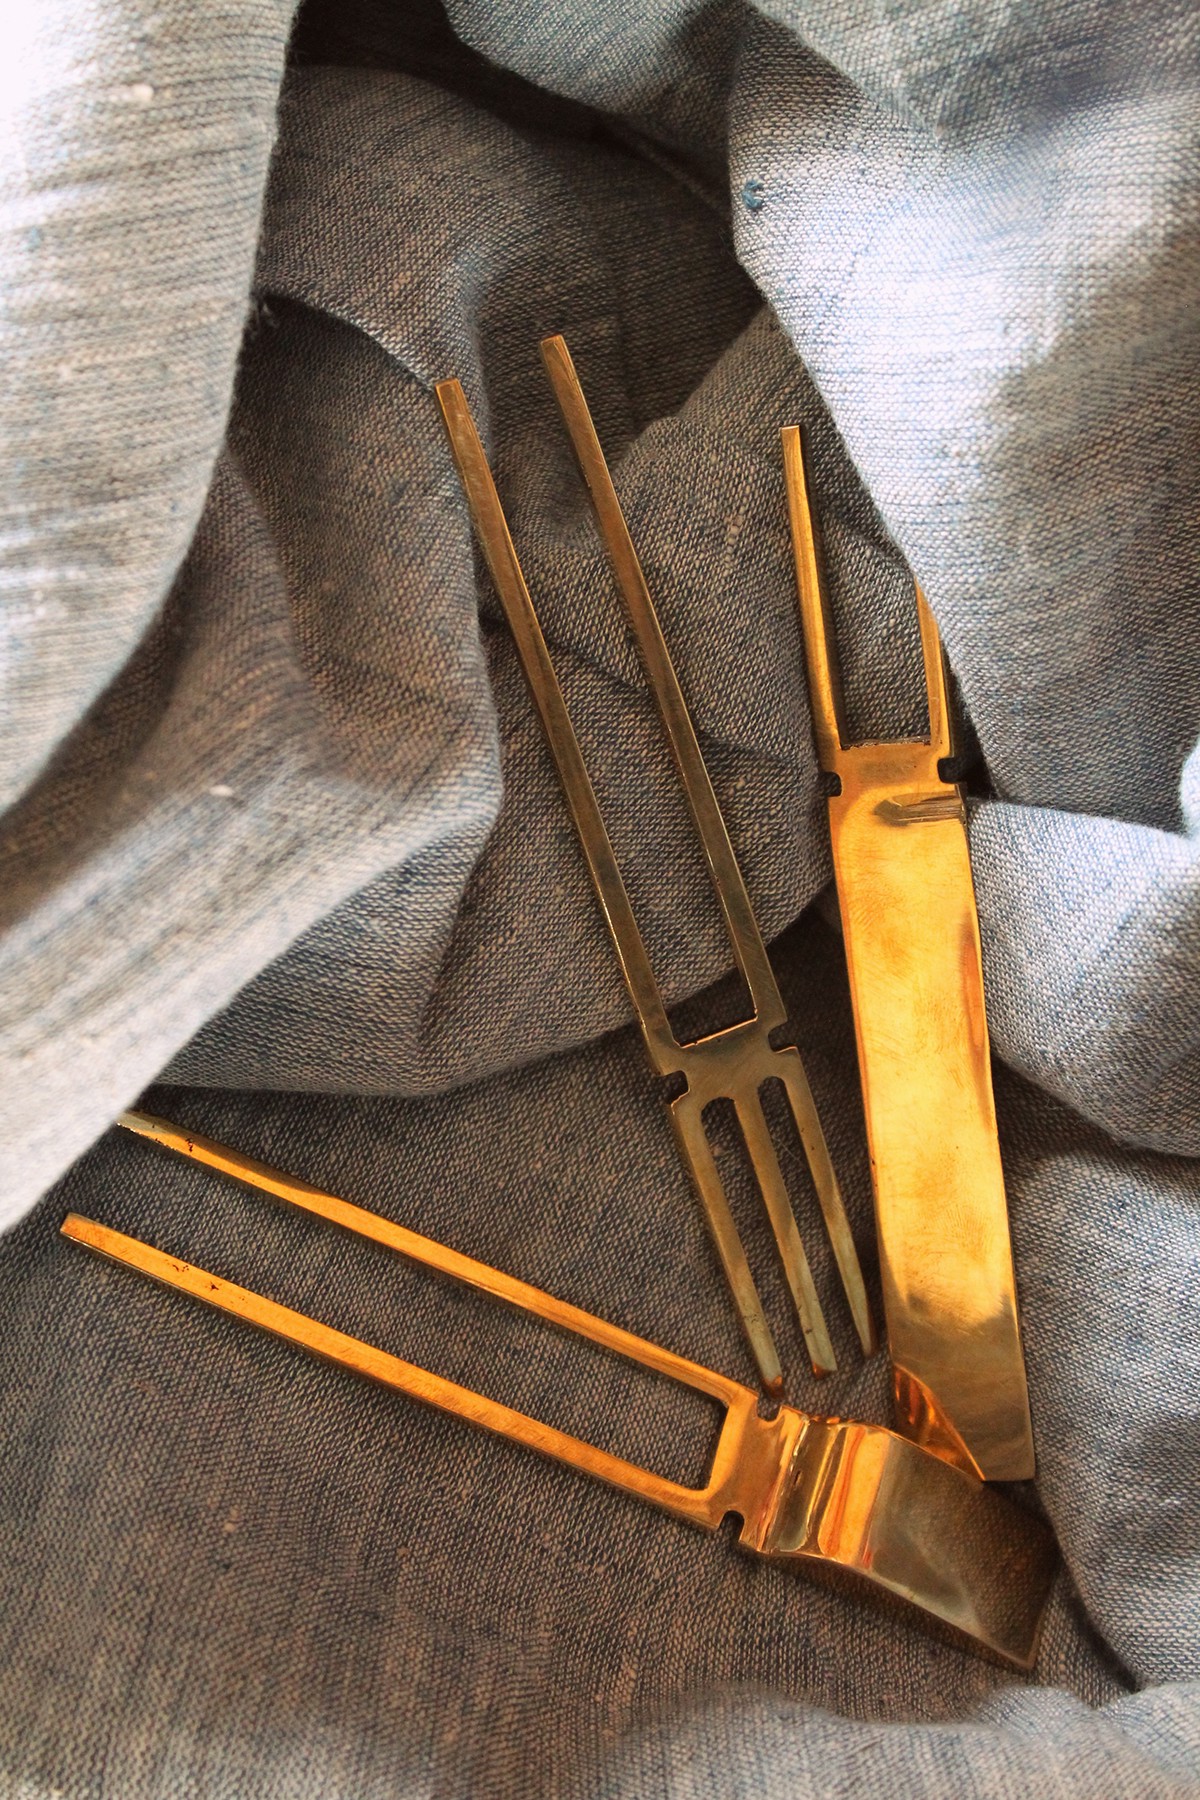 cutlery Flatwares brass sandcasting metal spoons fork knife craft tableware